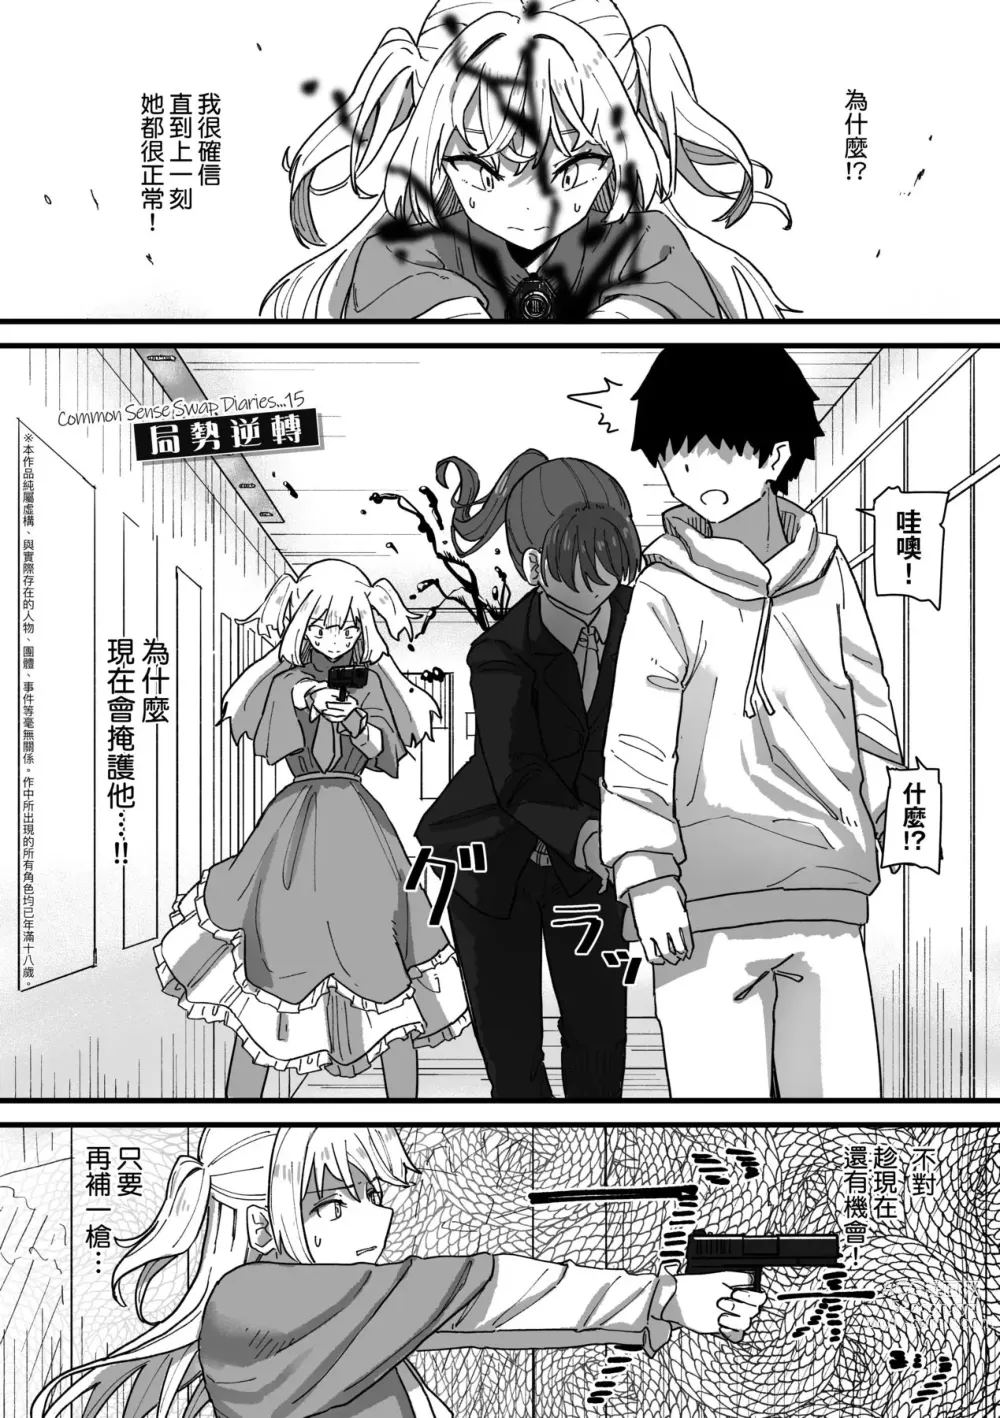 Page 149 of manga 常識改變活動紀錄